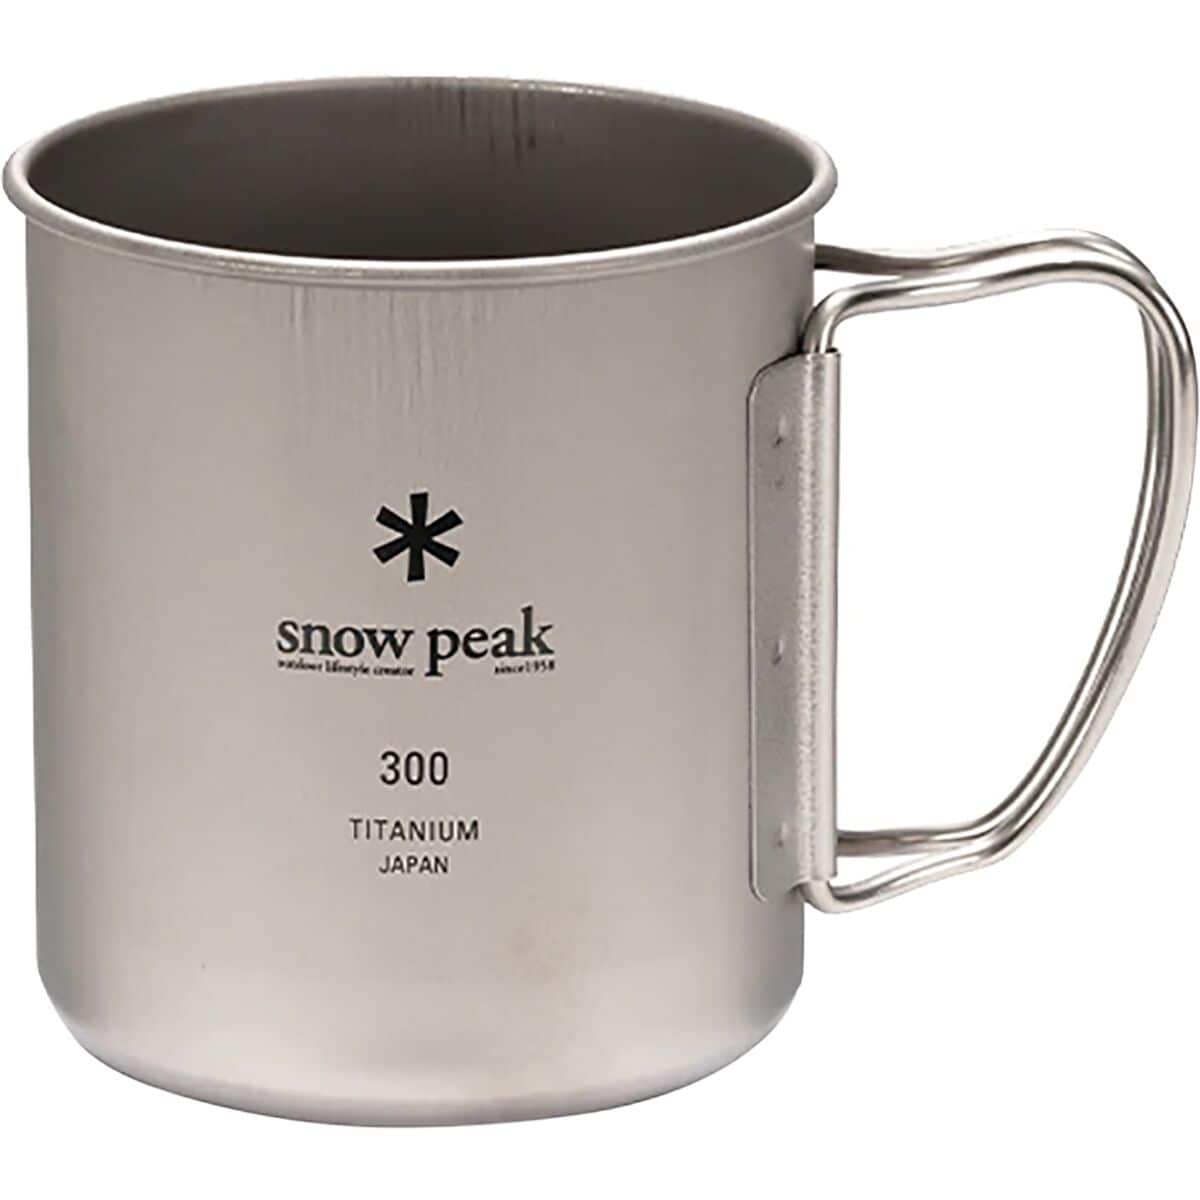 Snow Peak Titanium Single Mug